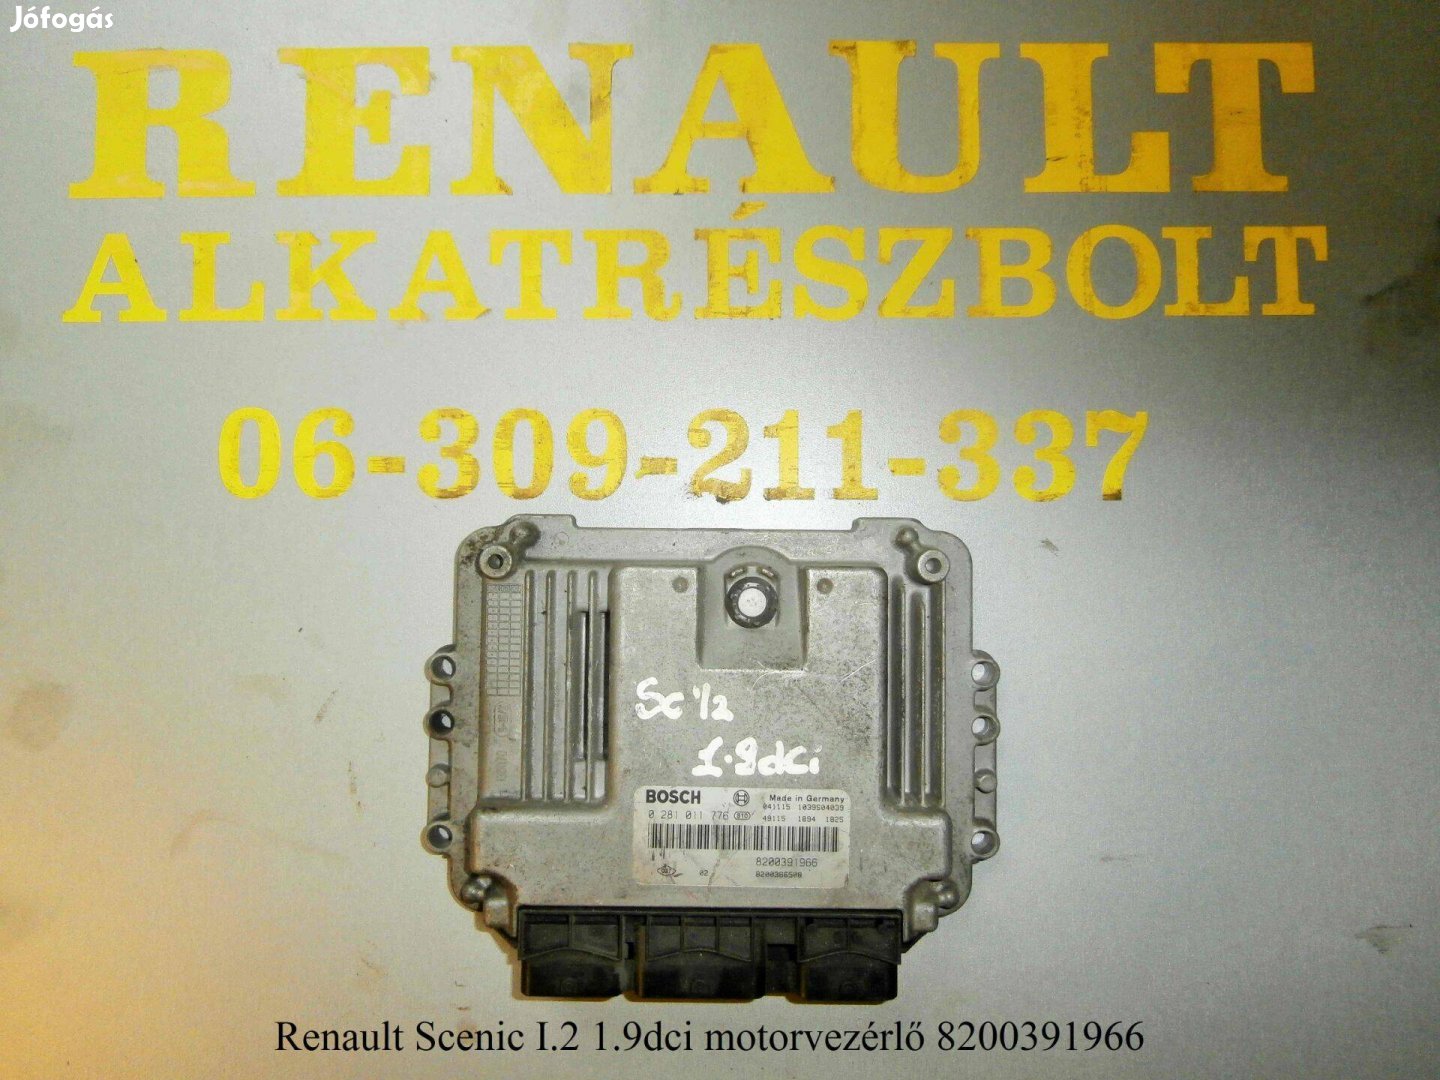 Renault Scenic I/2 1.9dci motorvezérlő 8200391966